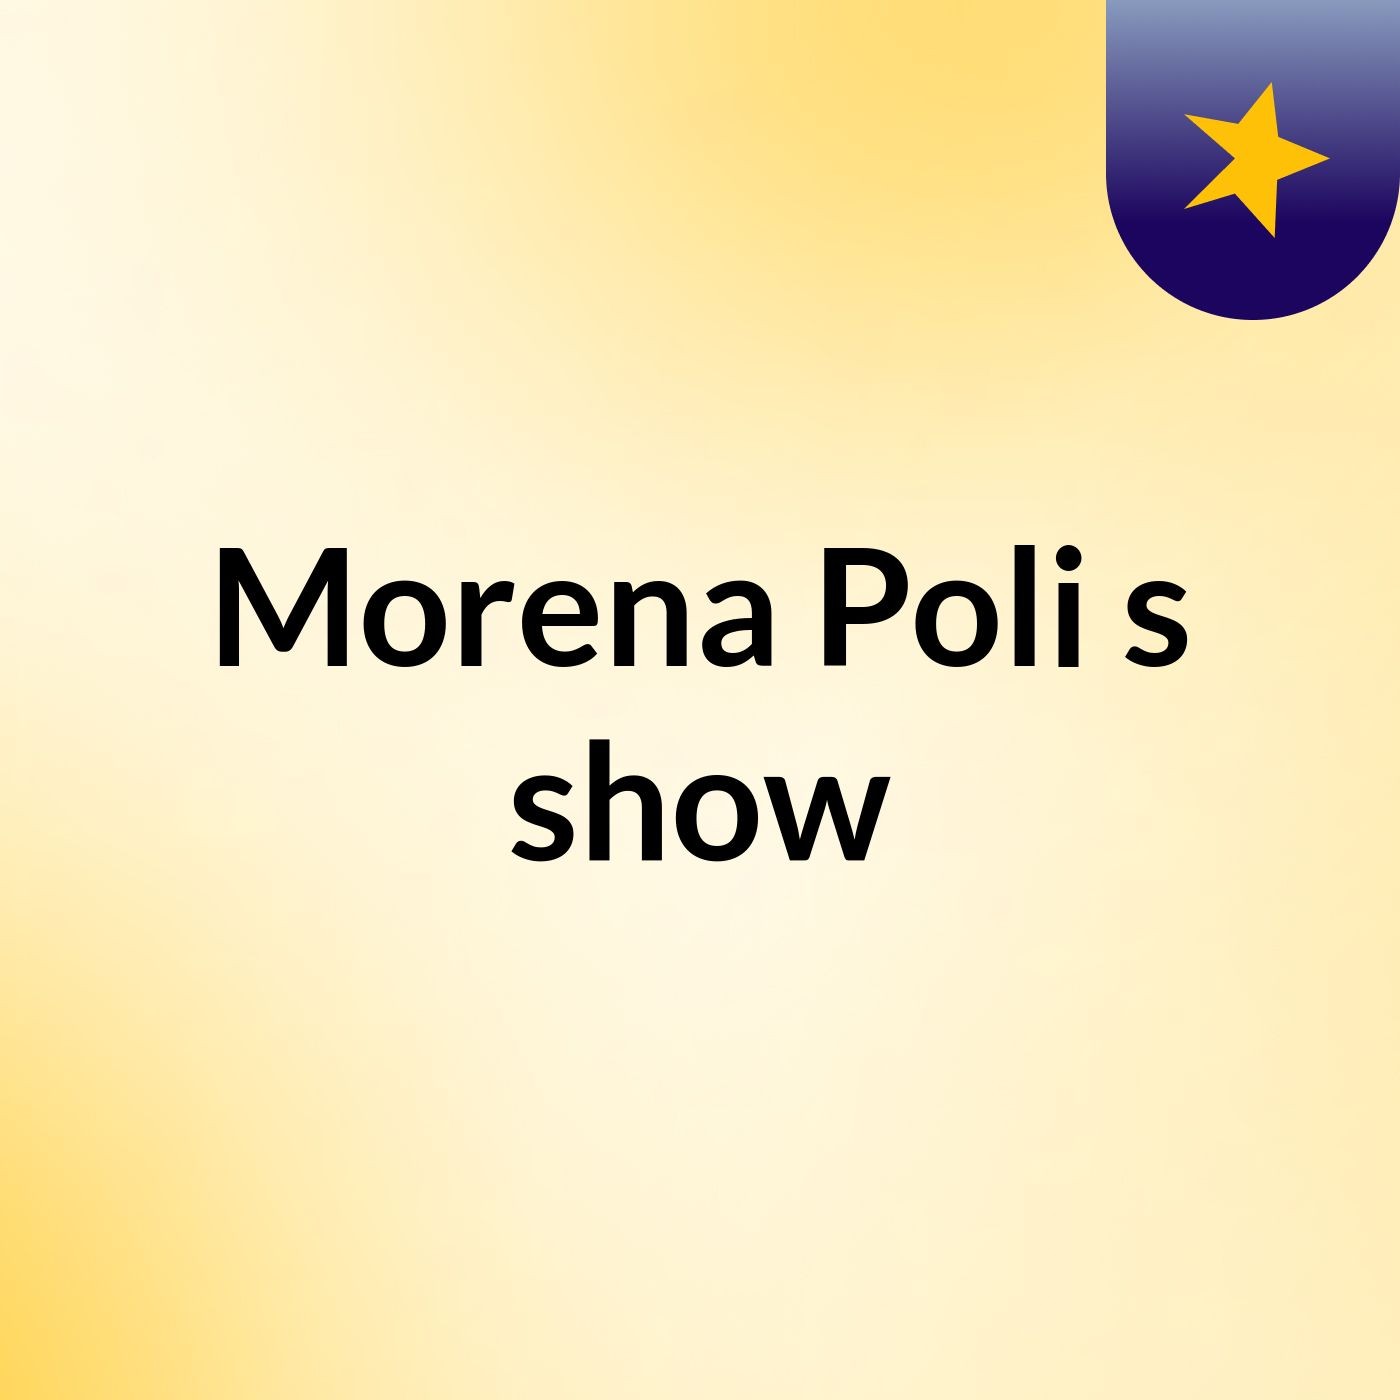 Morena Poli's show